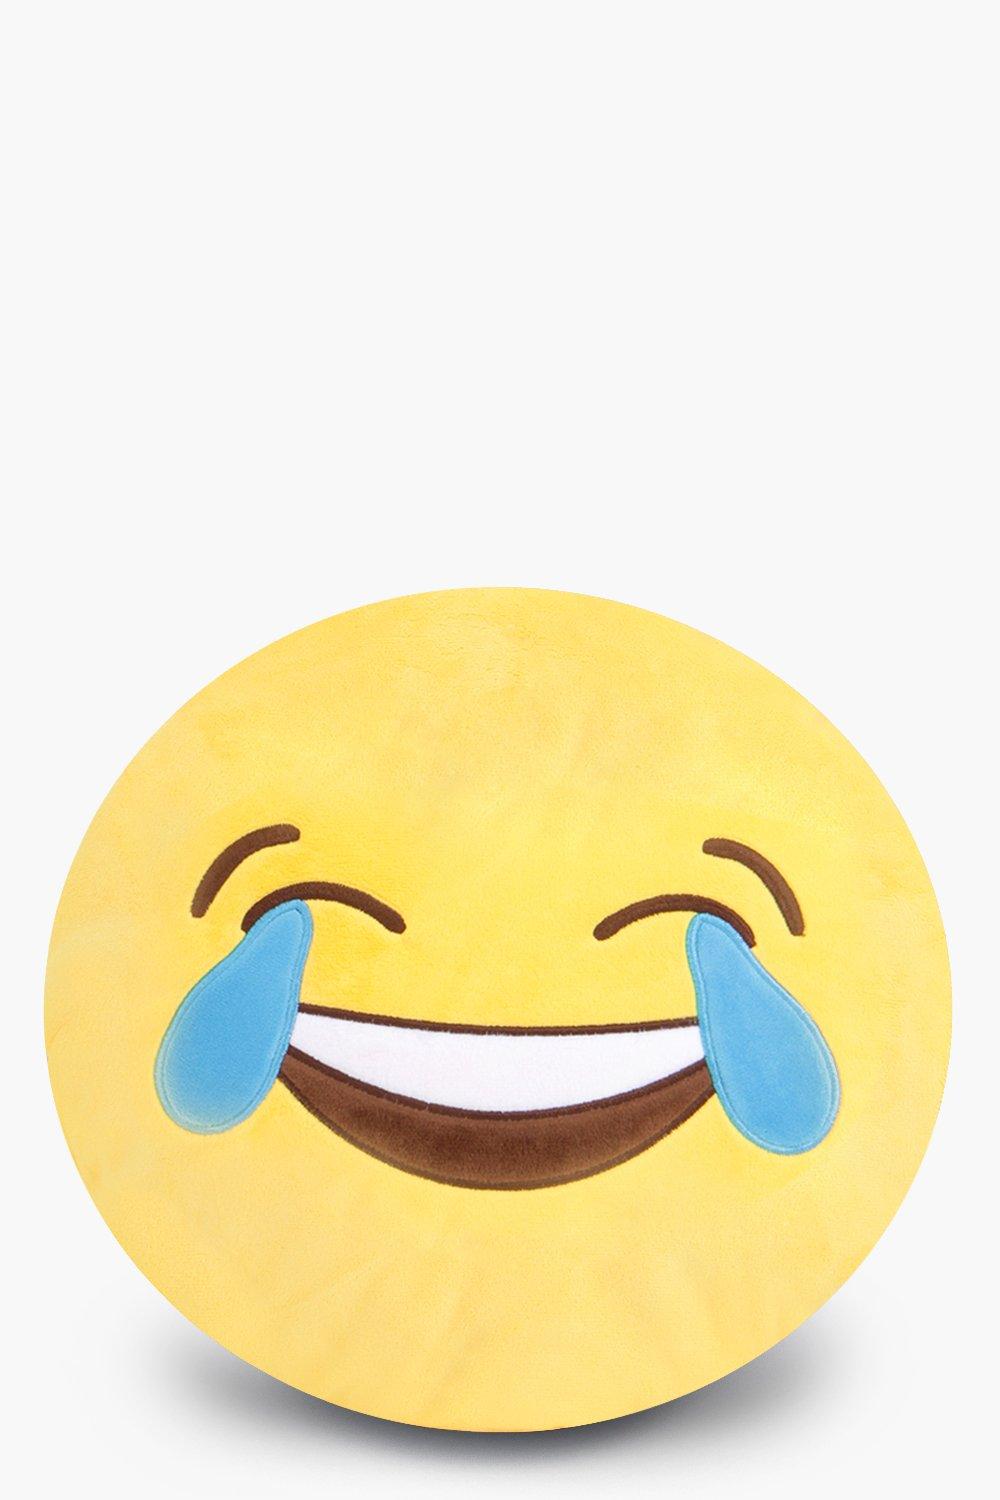 laughing crying emoji copy paste